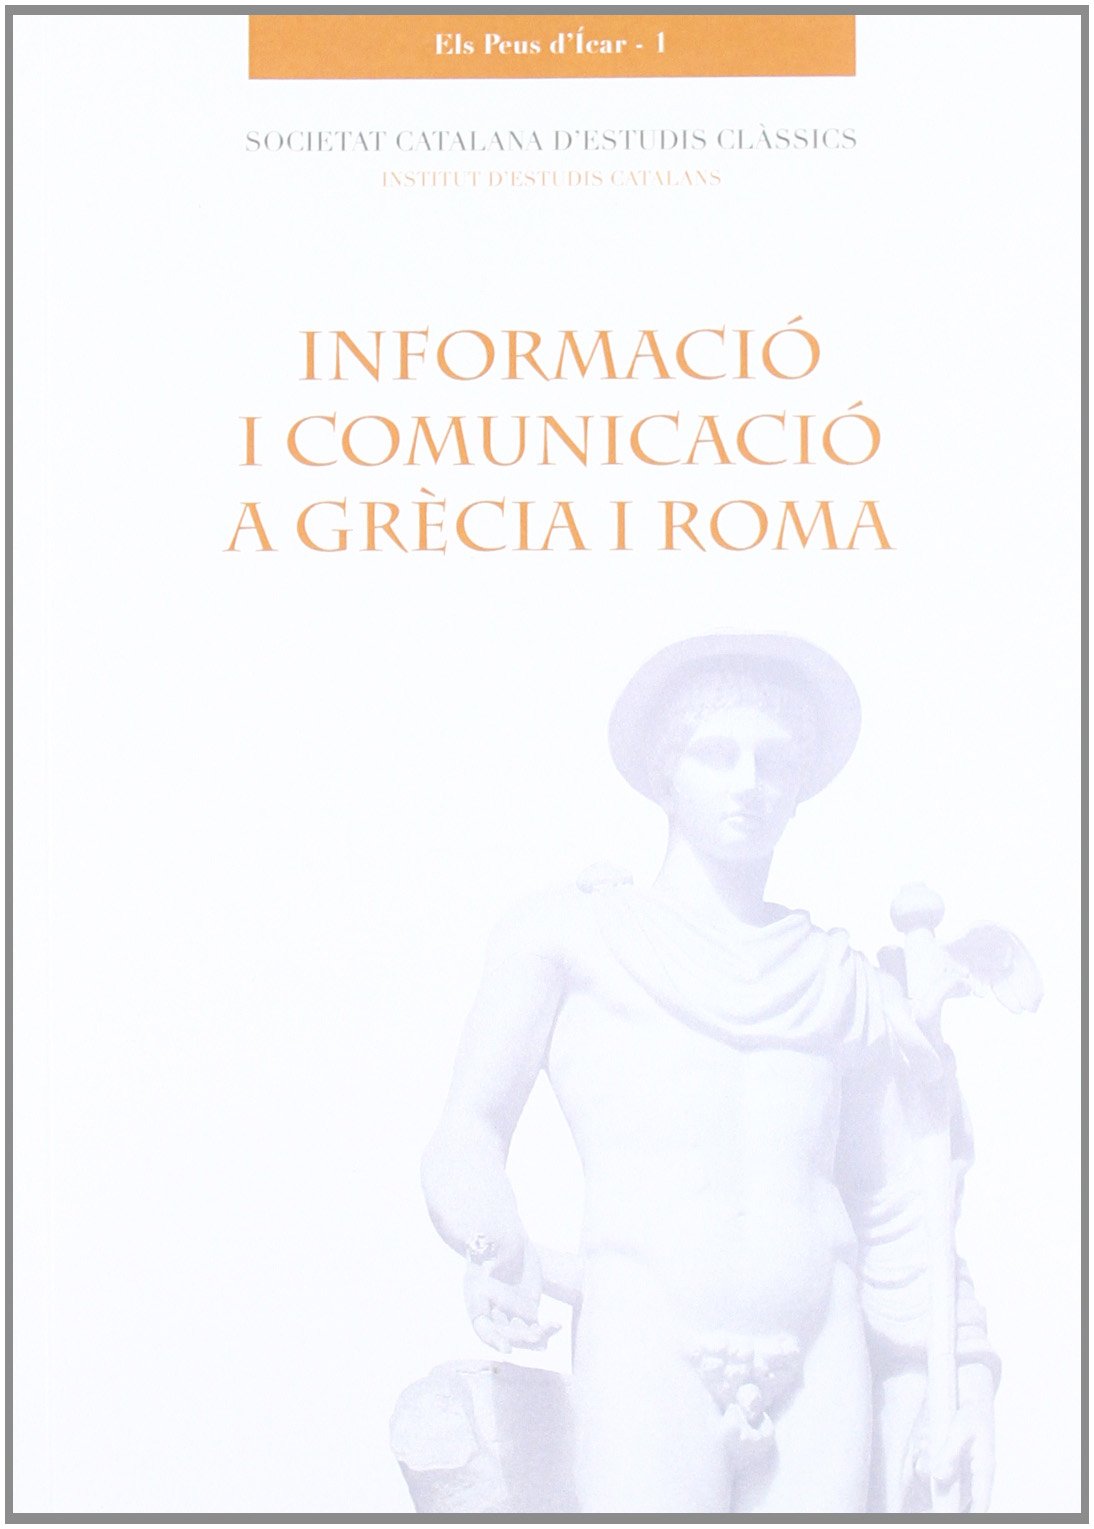 Imagen de portada del libro Informació i comunicació a Grècia i Roma